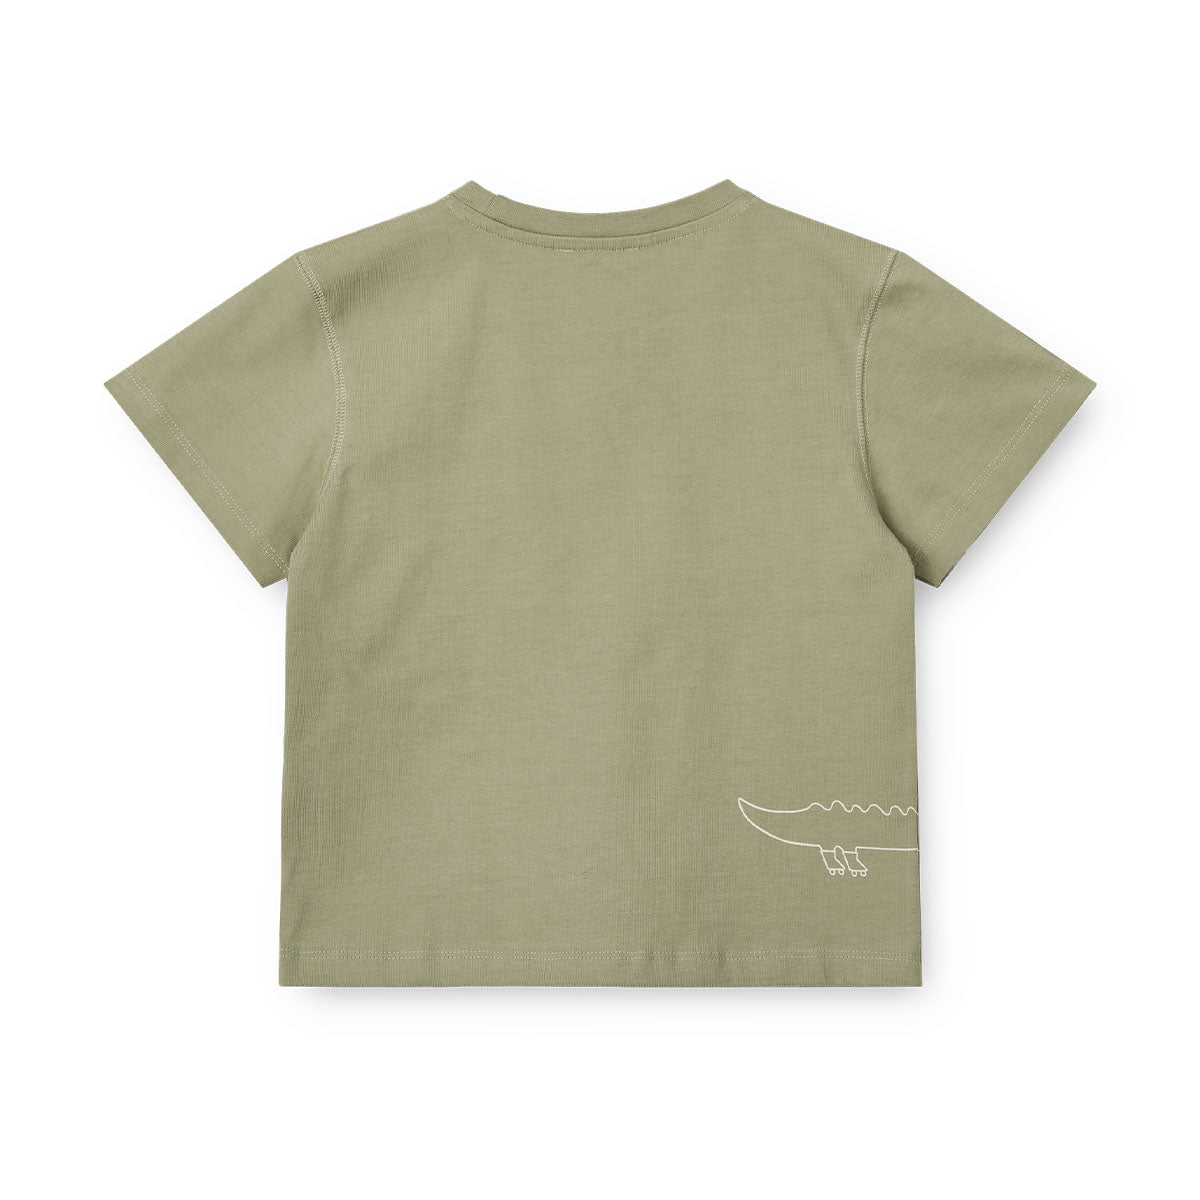 Verrijk de garderobe van je kleintje met dit schattige sixten T-shirt in de kleur roll with it/tea van het merk Liewood. Dit stijlvolle shirtje ziet er niet alleen geweldig uit, maar zit ook heel erg lekker! VanZus